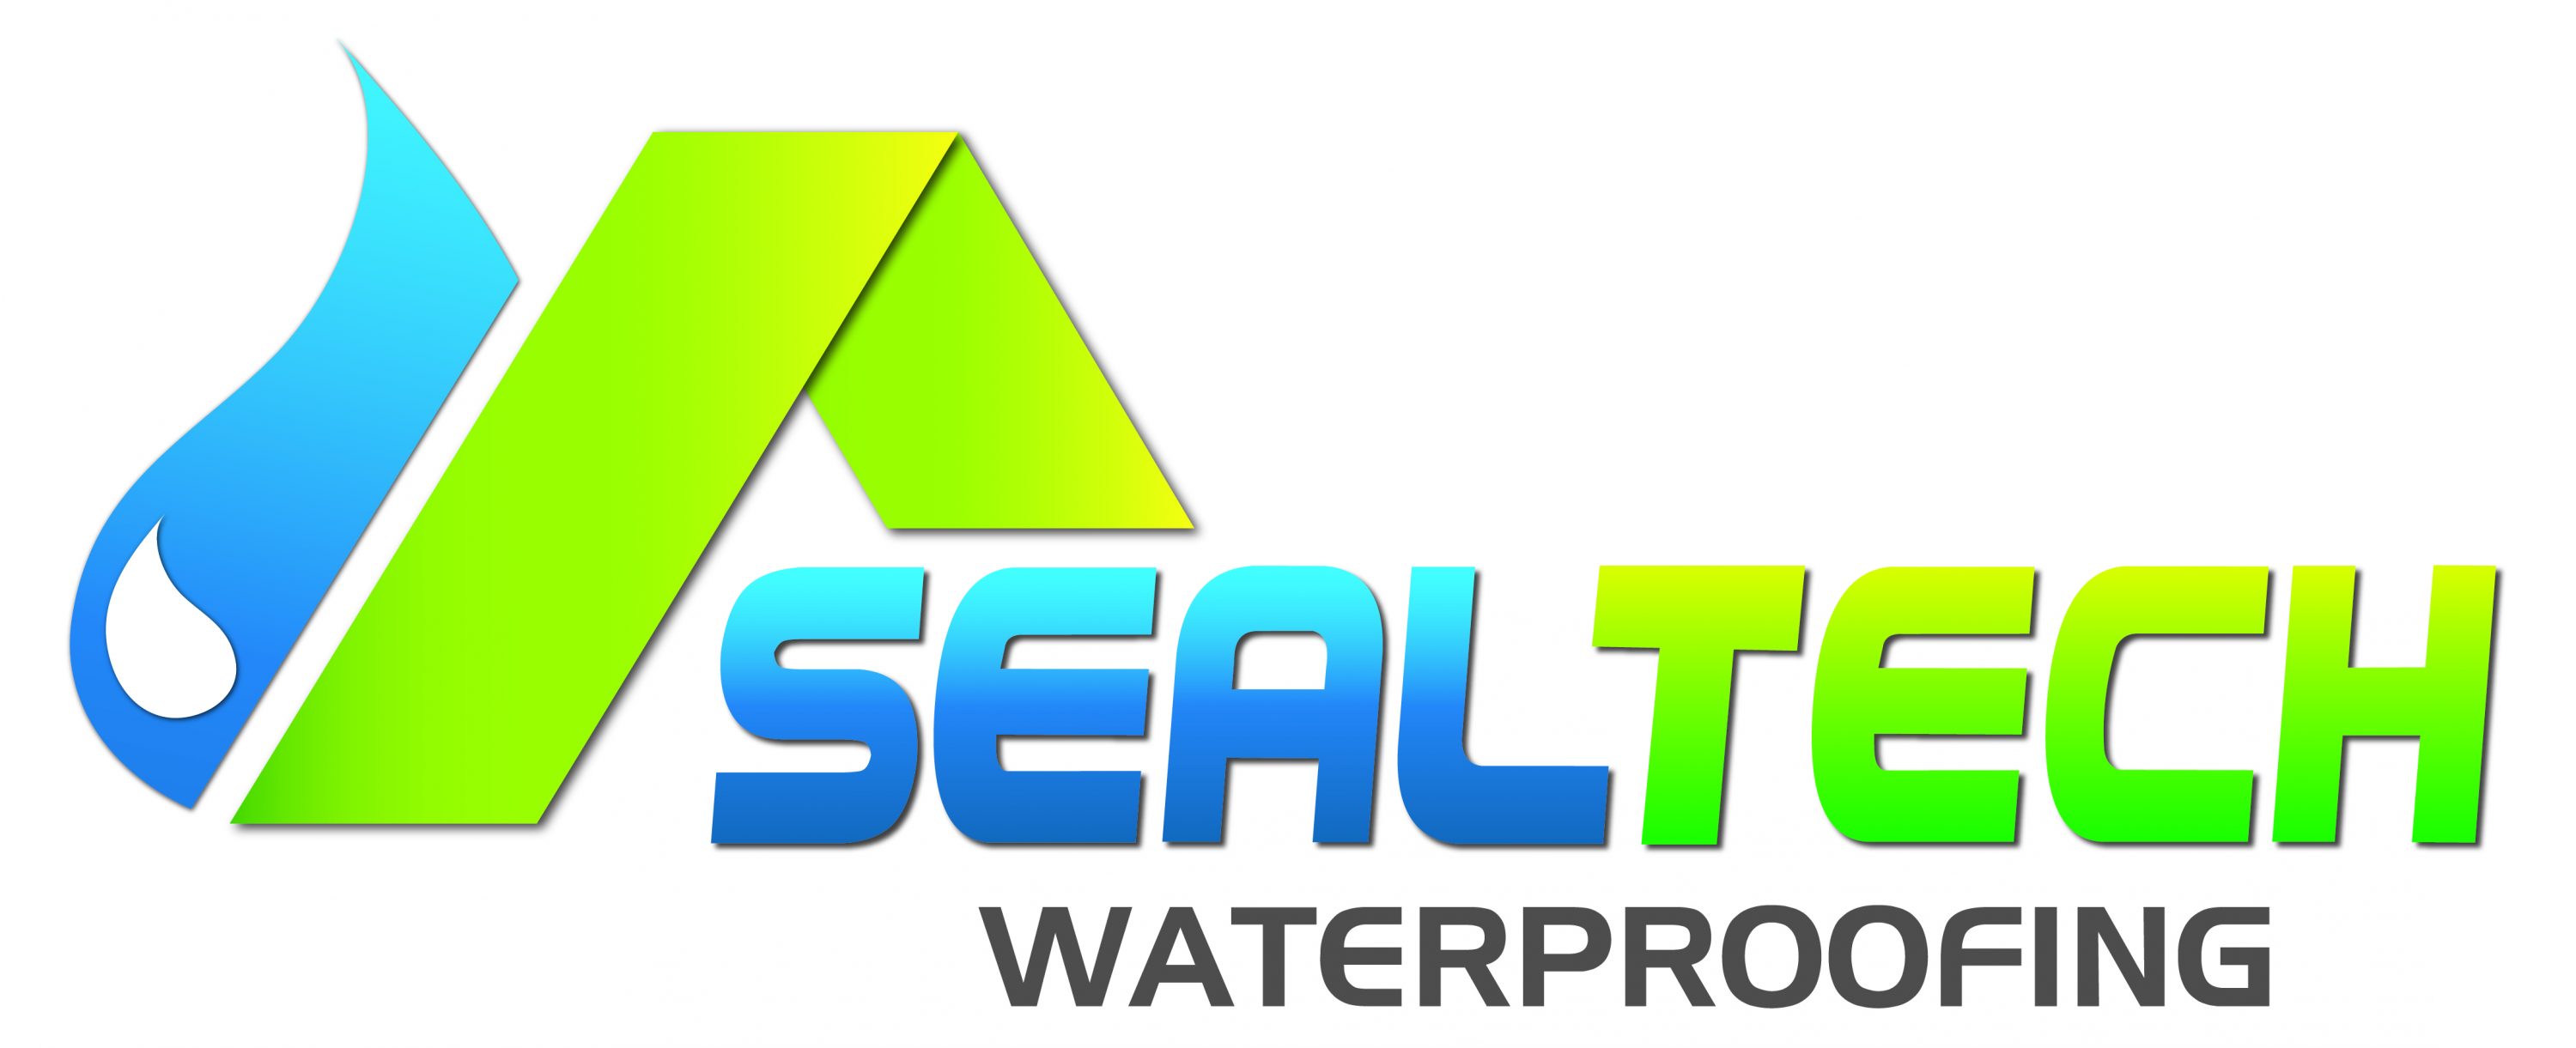 Sealtech Waterproofing